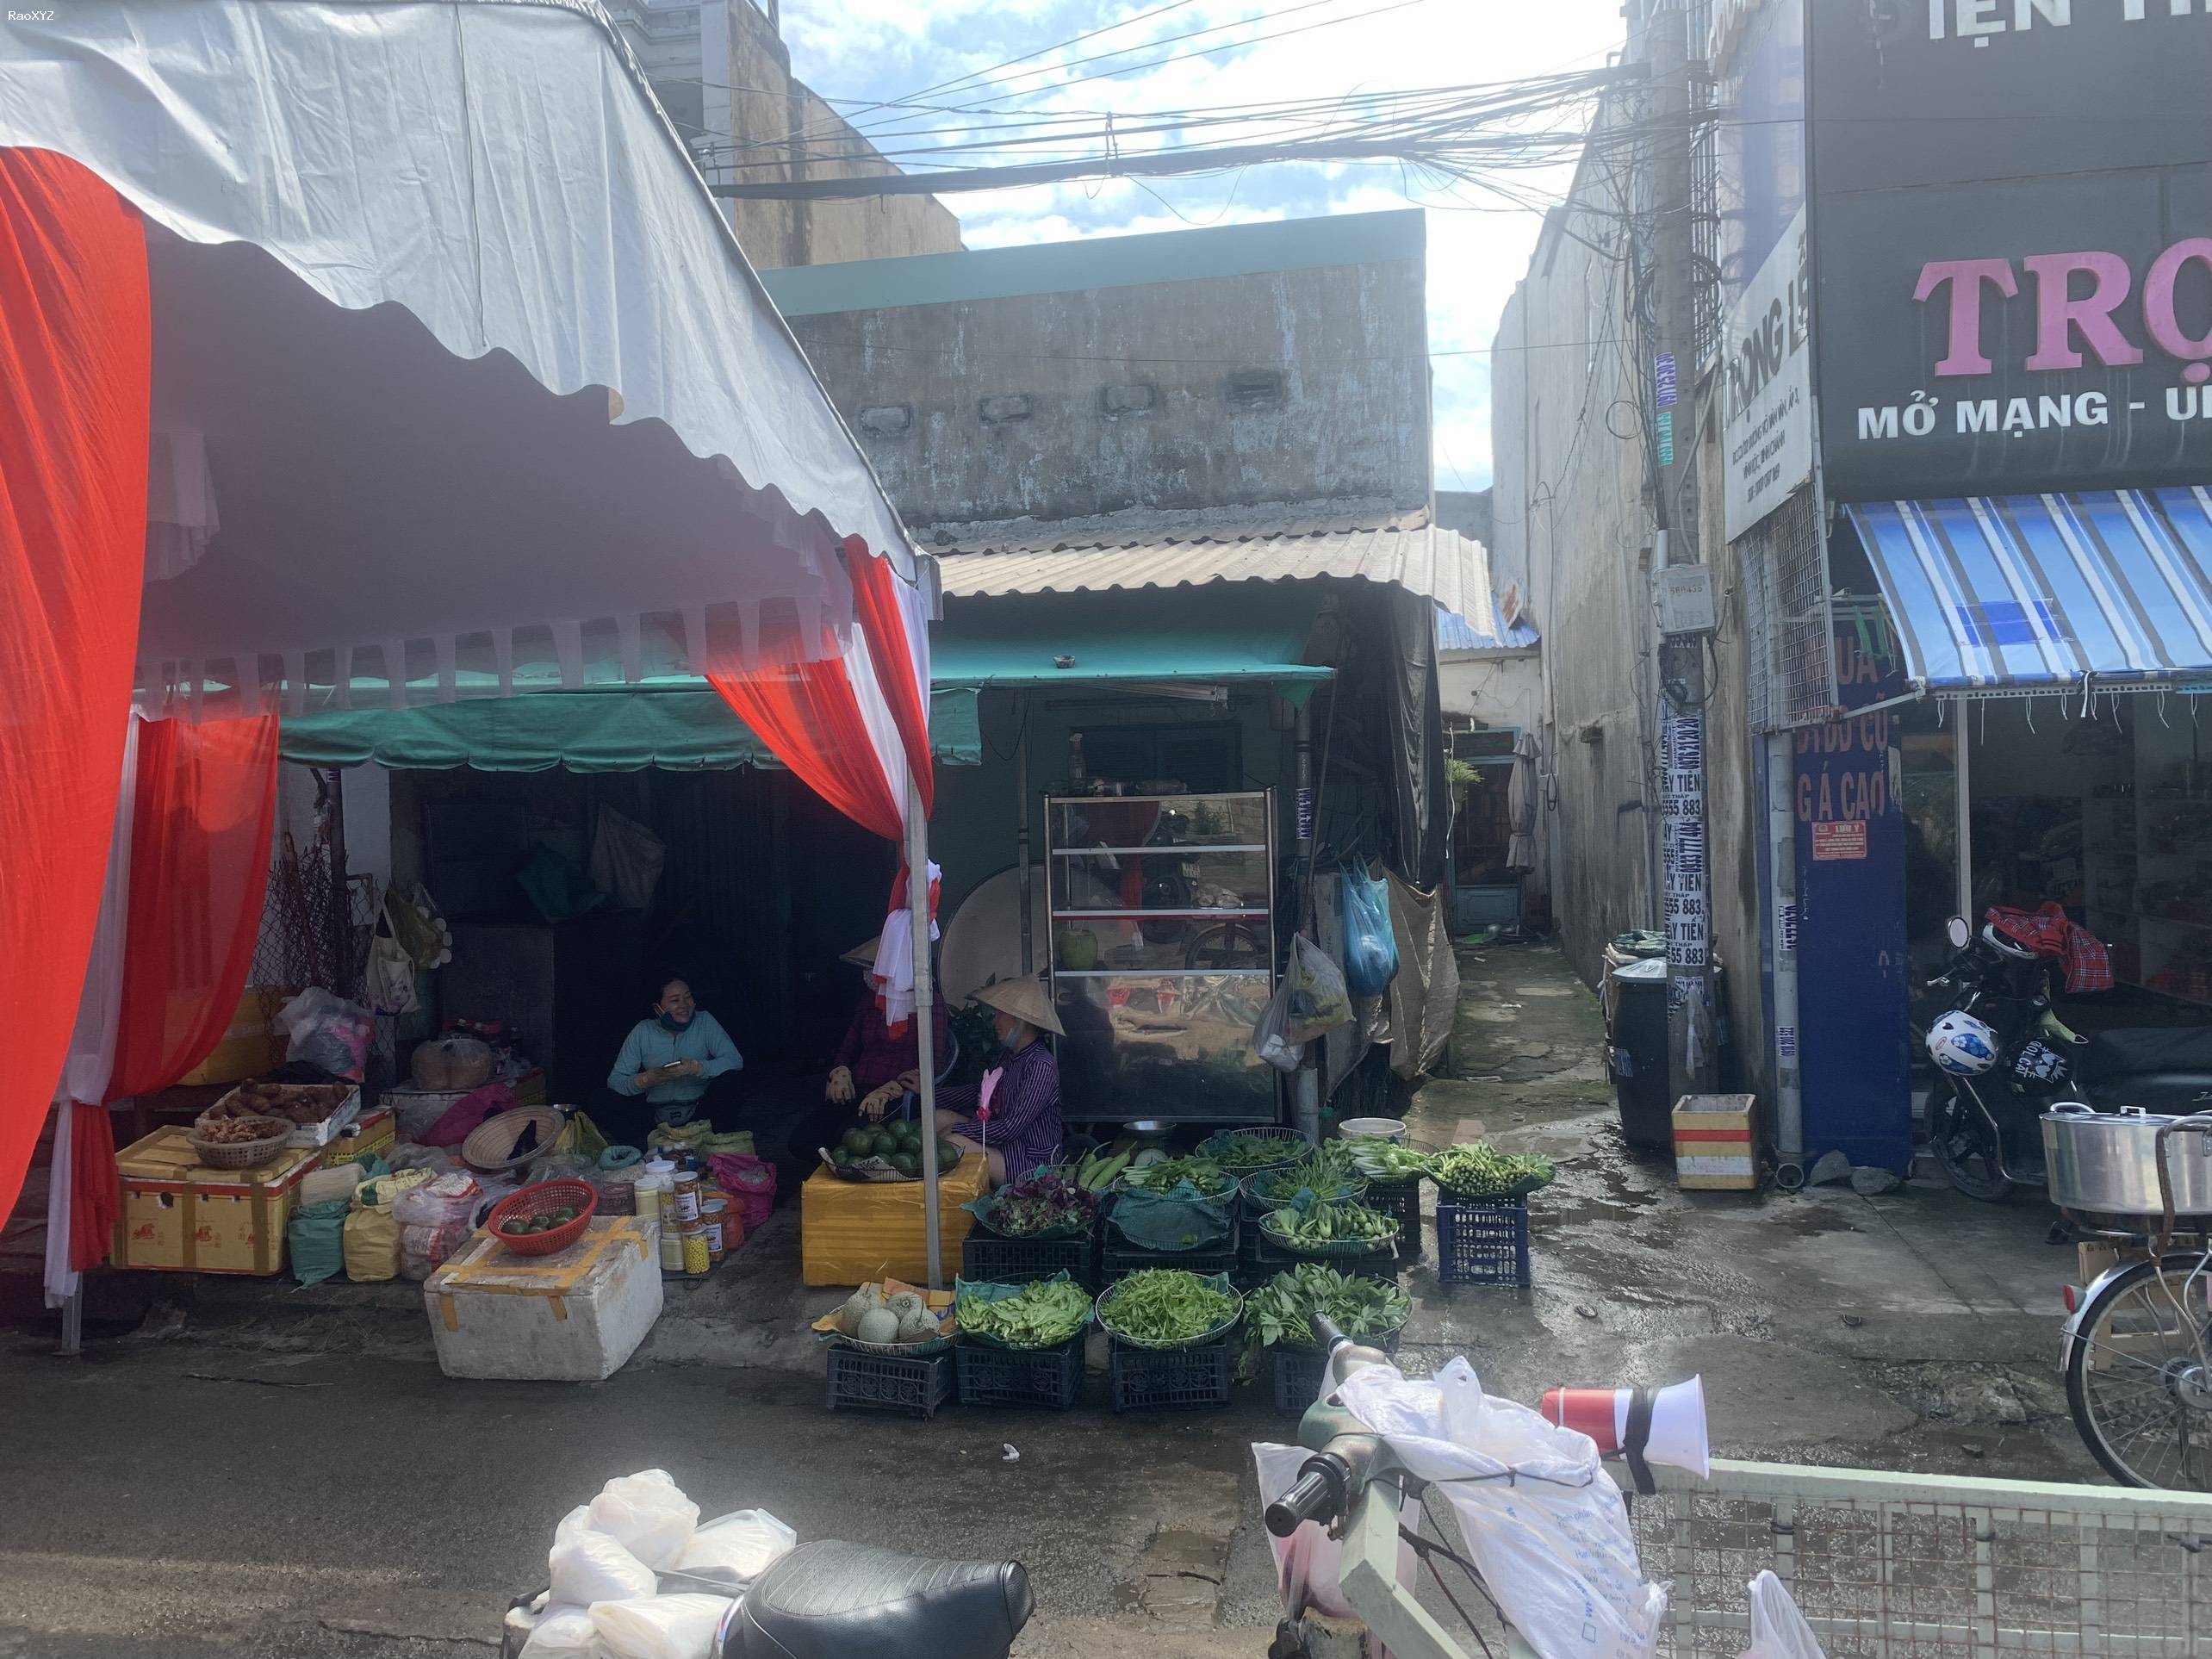 Cần bán căn nhà mặt tiền chợ Liên Ấp 123, xã Vĩnh Lộc B, Bình Chánh tiện kinh doanh